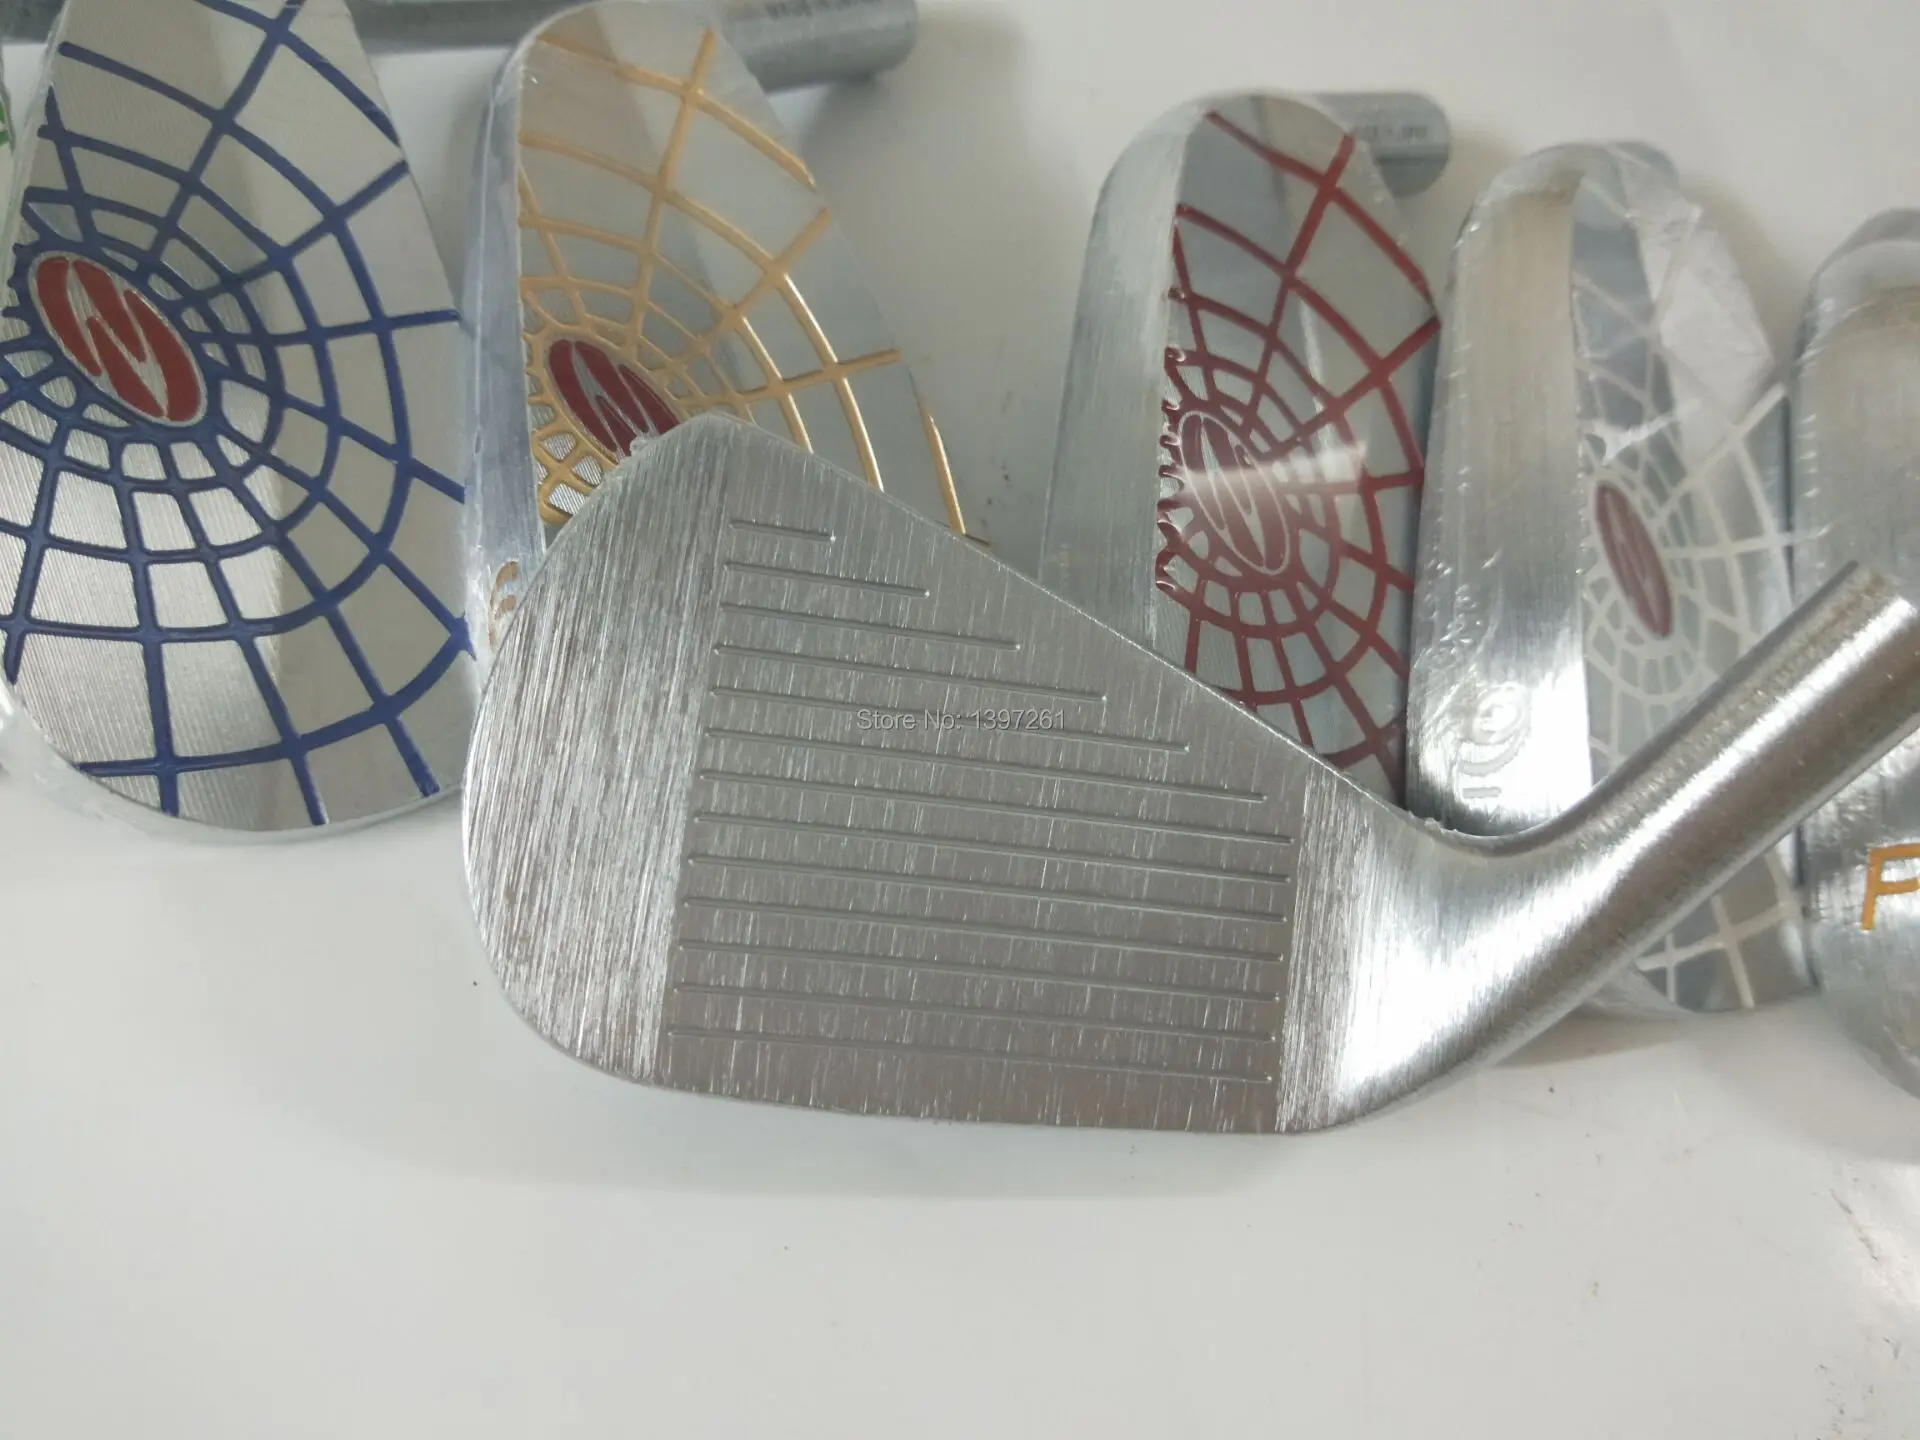 TourOK клюшки для гольфа Zodia spider silver набор утюгов для гольфа 4-9p утюги для клюшек без вала для гольфа